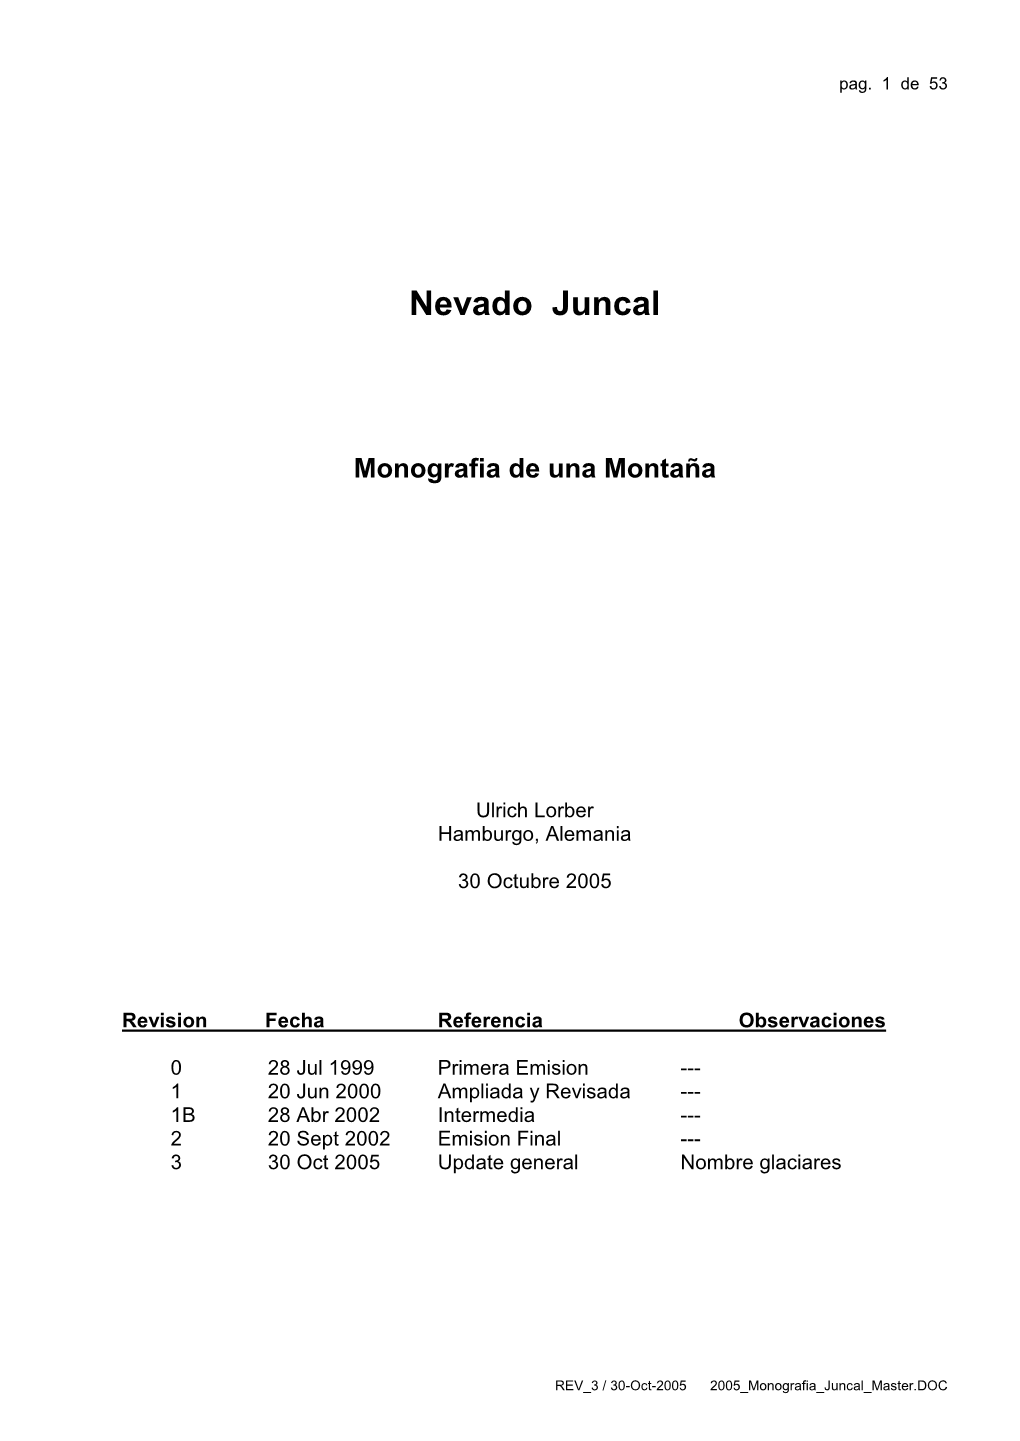 Monografía Del Nevado Juncal